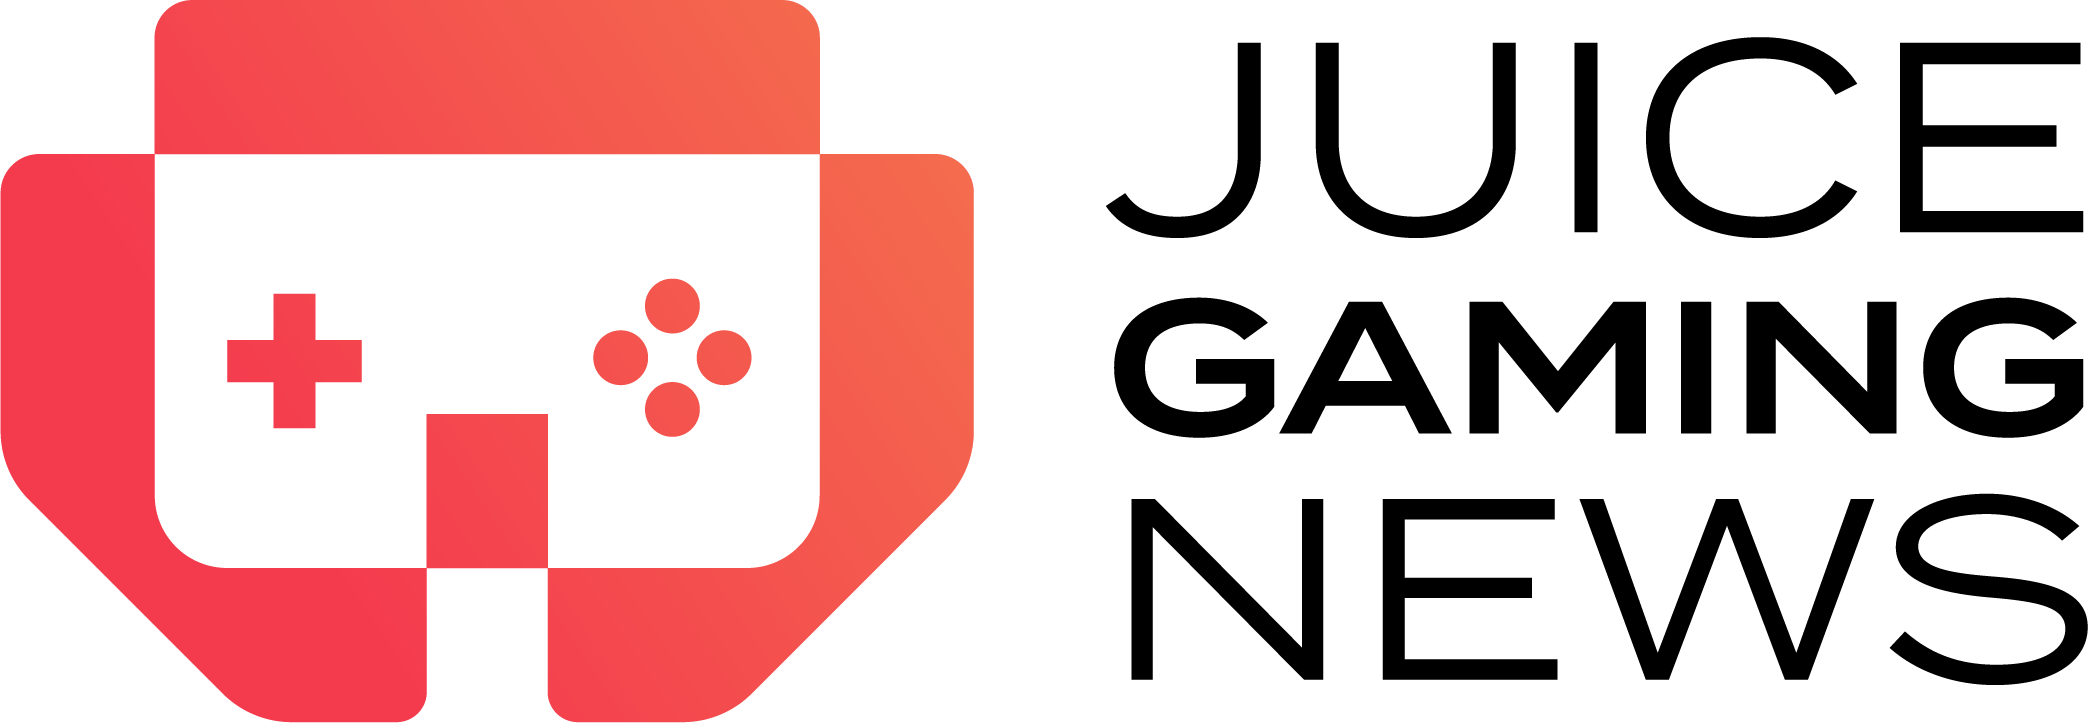 Juice Gaming News Emblem